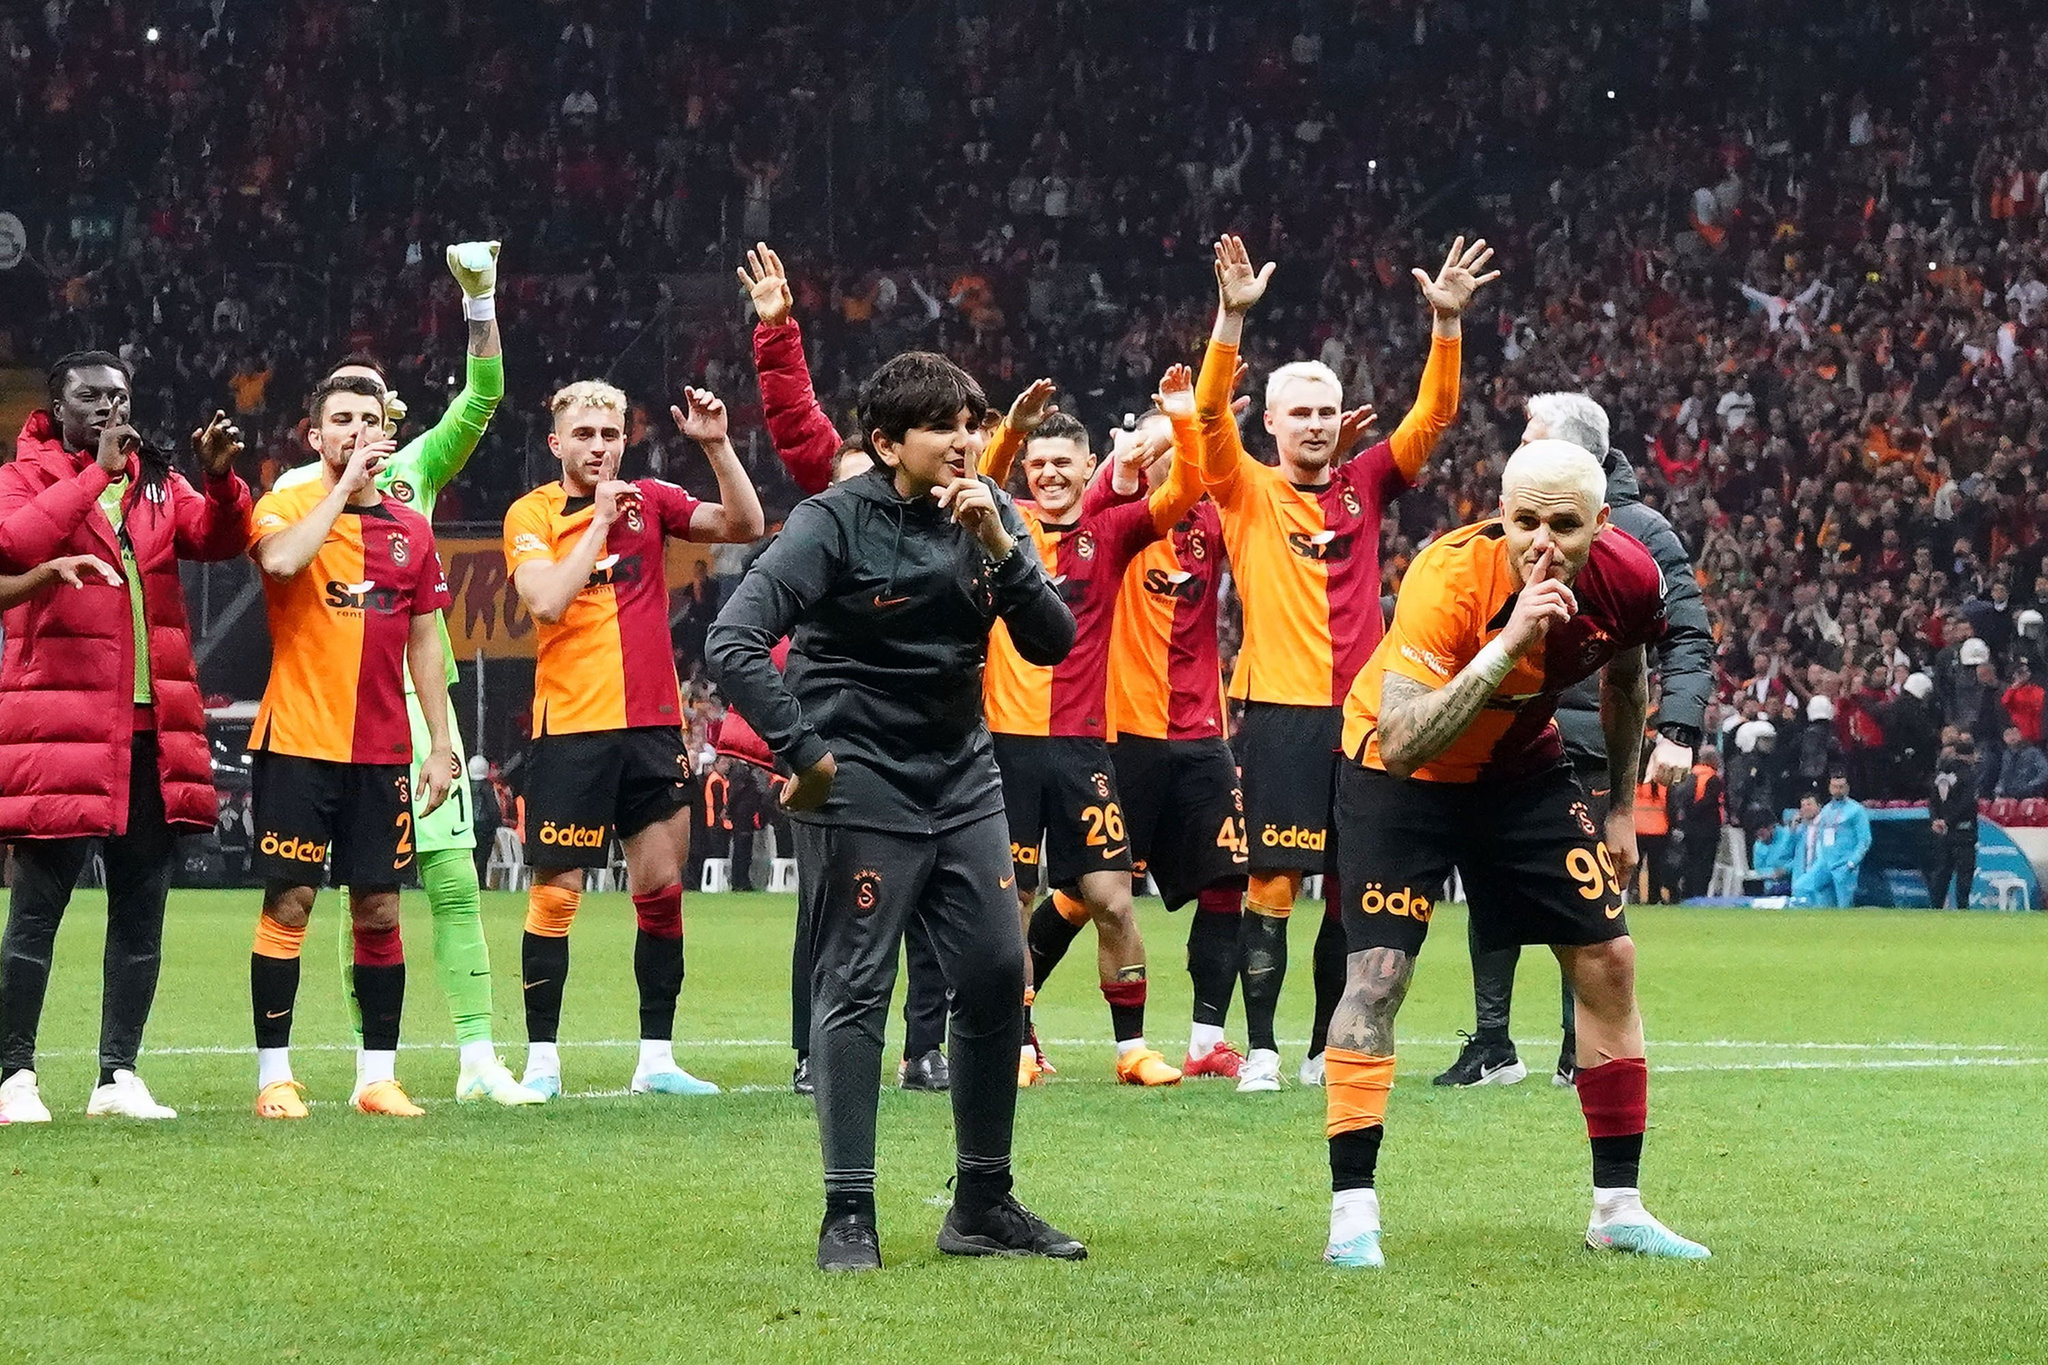 ⚽ Galatasaray - Beşiktaş, Sadece yanlış tahminlerinizi alalım. 👀 ✓  Bilyoner'e getirdiğin her arkadaşın için sana ve arkadaşına tam 50 TL …